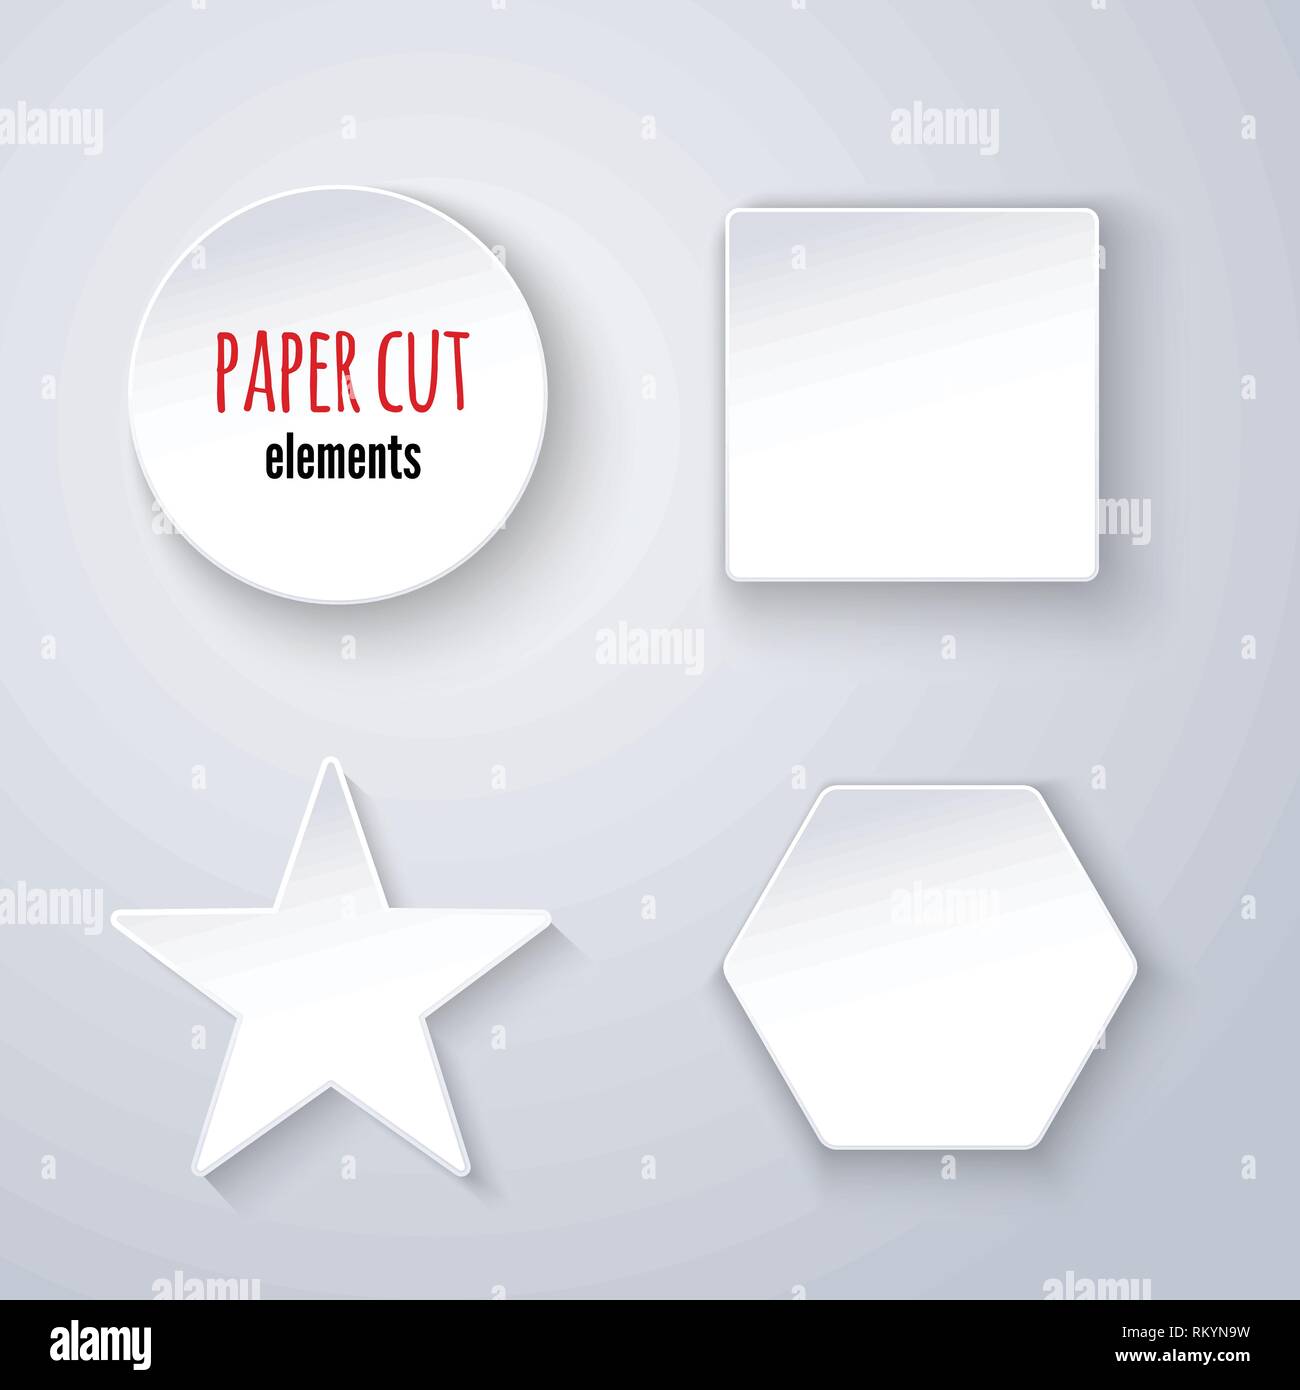 Einstellen des Papiers geometrischen Figuren auf Weiß. Infografik Elemente für Design Stock Vektor